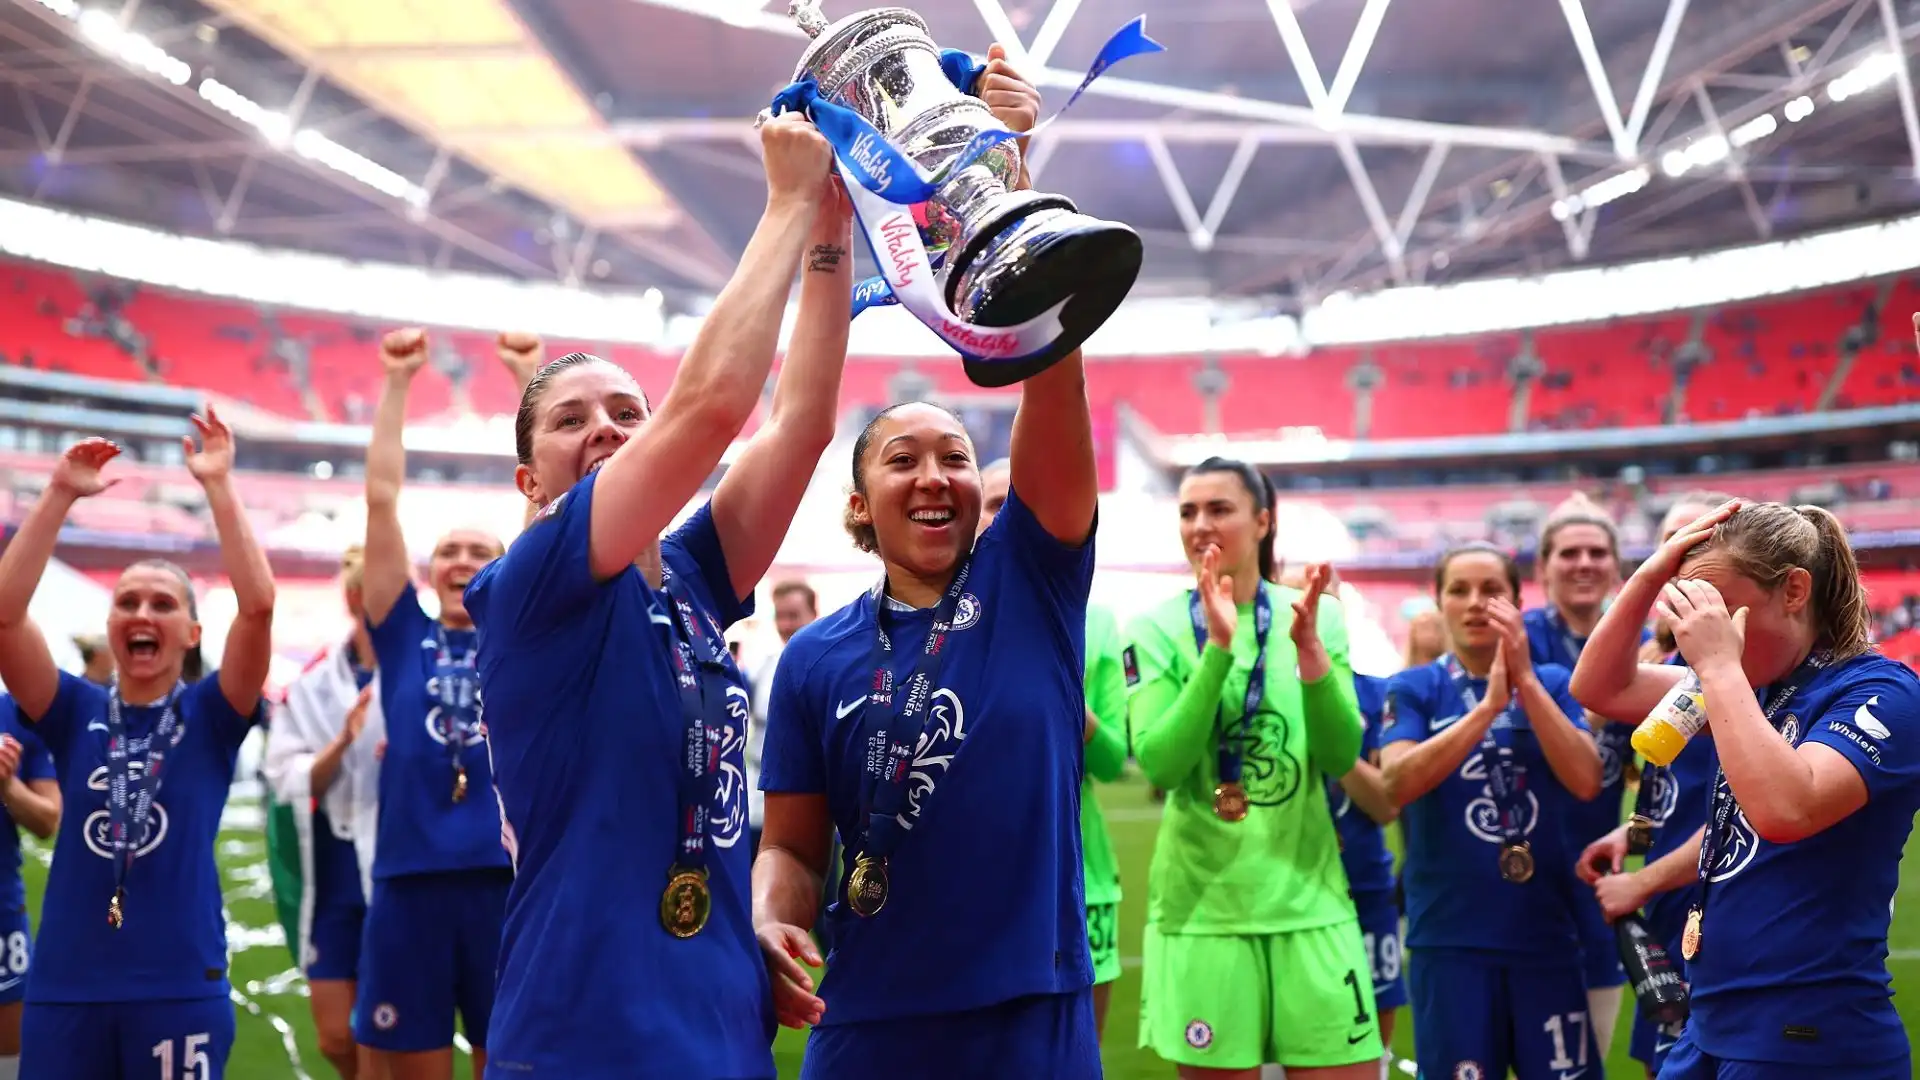 La partita ha stabilito il nuovo record di spettatori per un match femminile in Inghilterra, ben 77.390